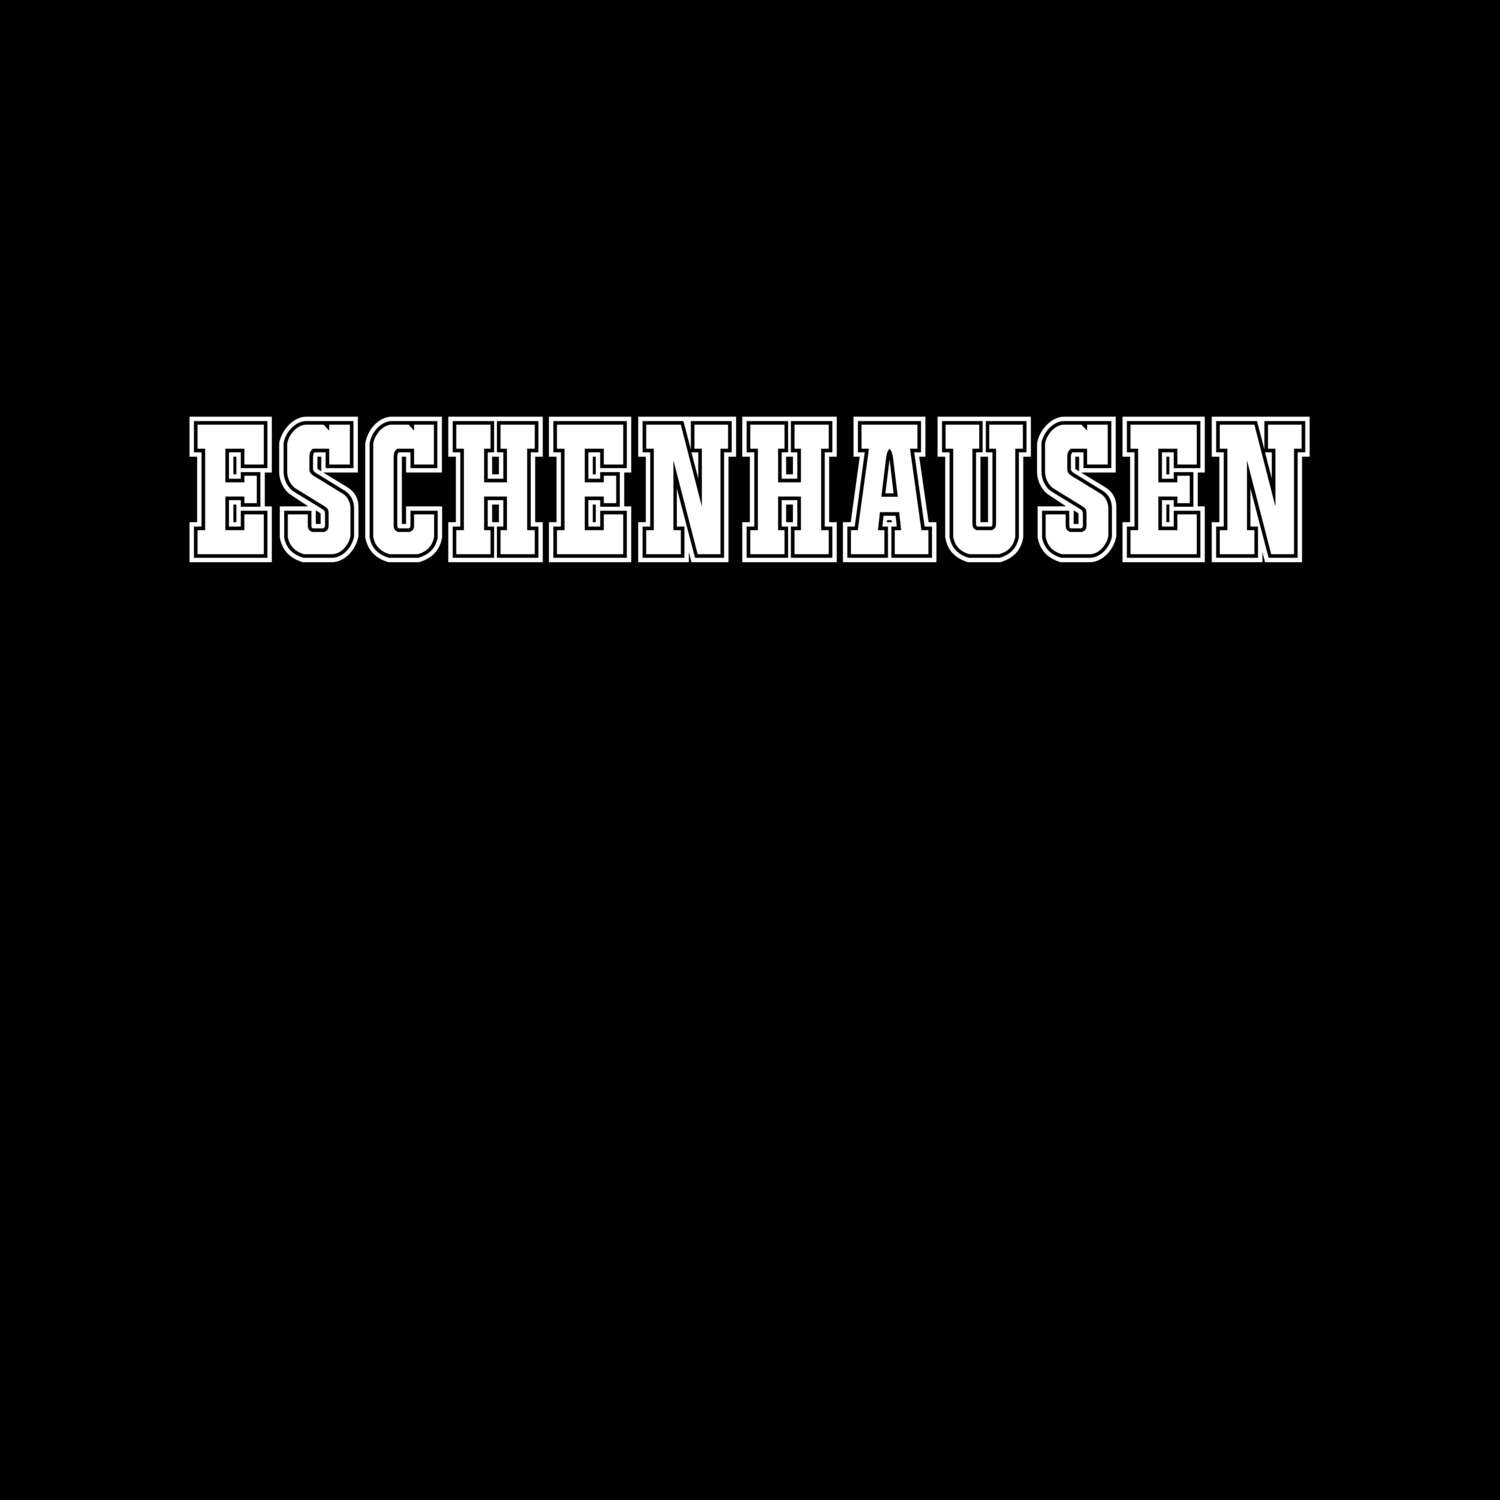 Eschenhausen T-Shirt »Classic«